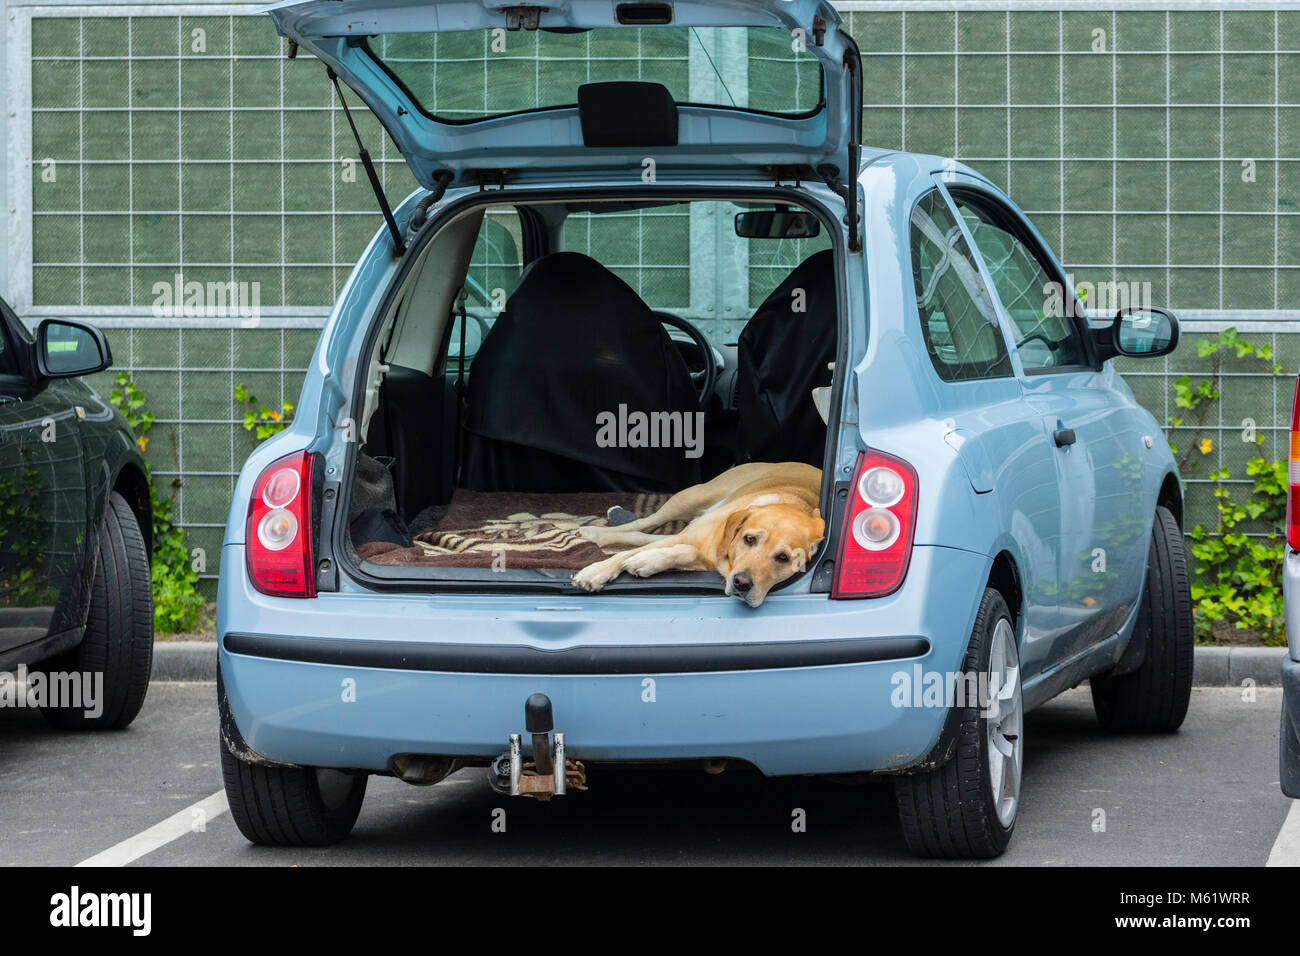 Perro Caliente espera en un automóvil estacionado por su propietario, el propietario ha dejado el coche con apertura de puerta trasera en el estacionamiento mientras está de compras. Foto de stock